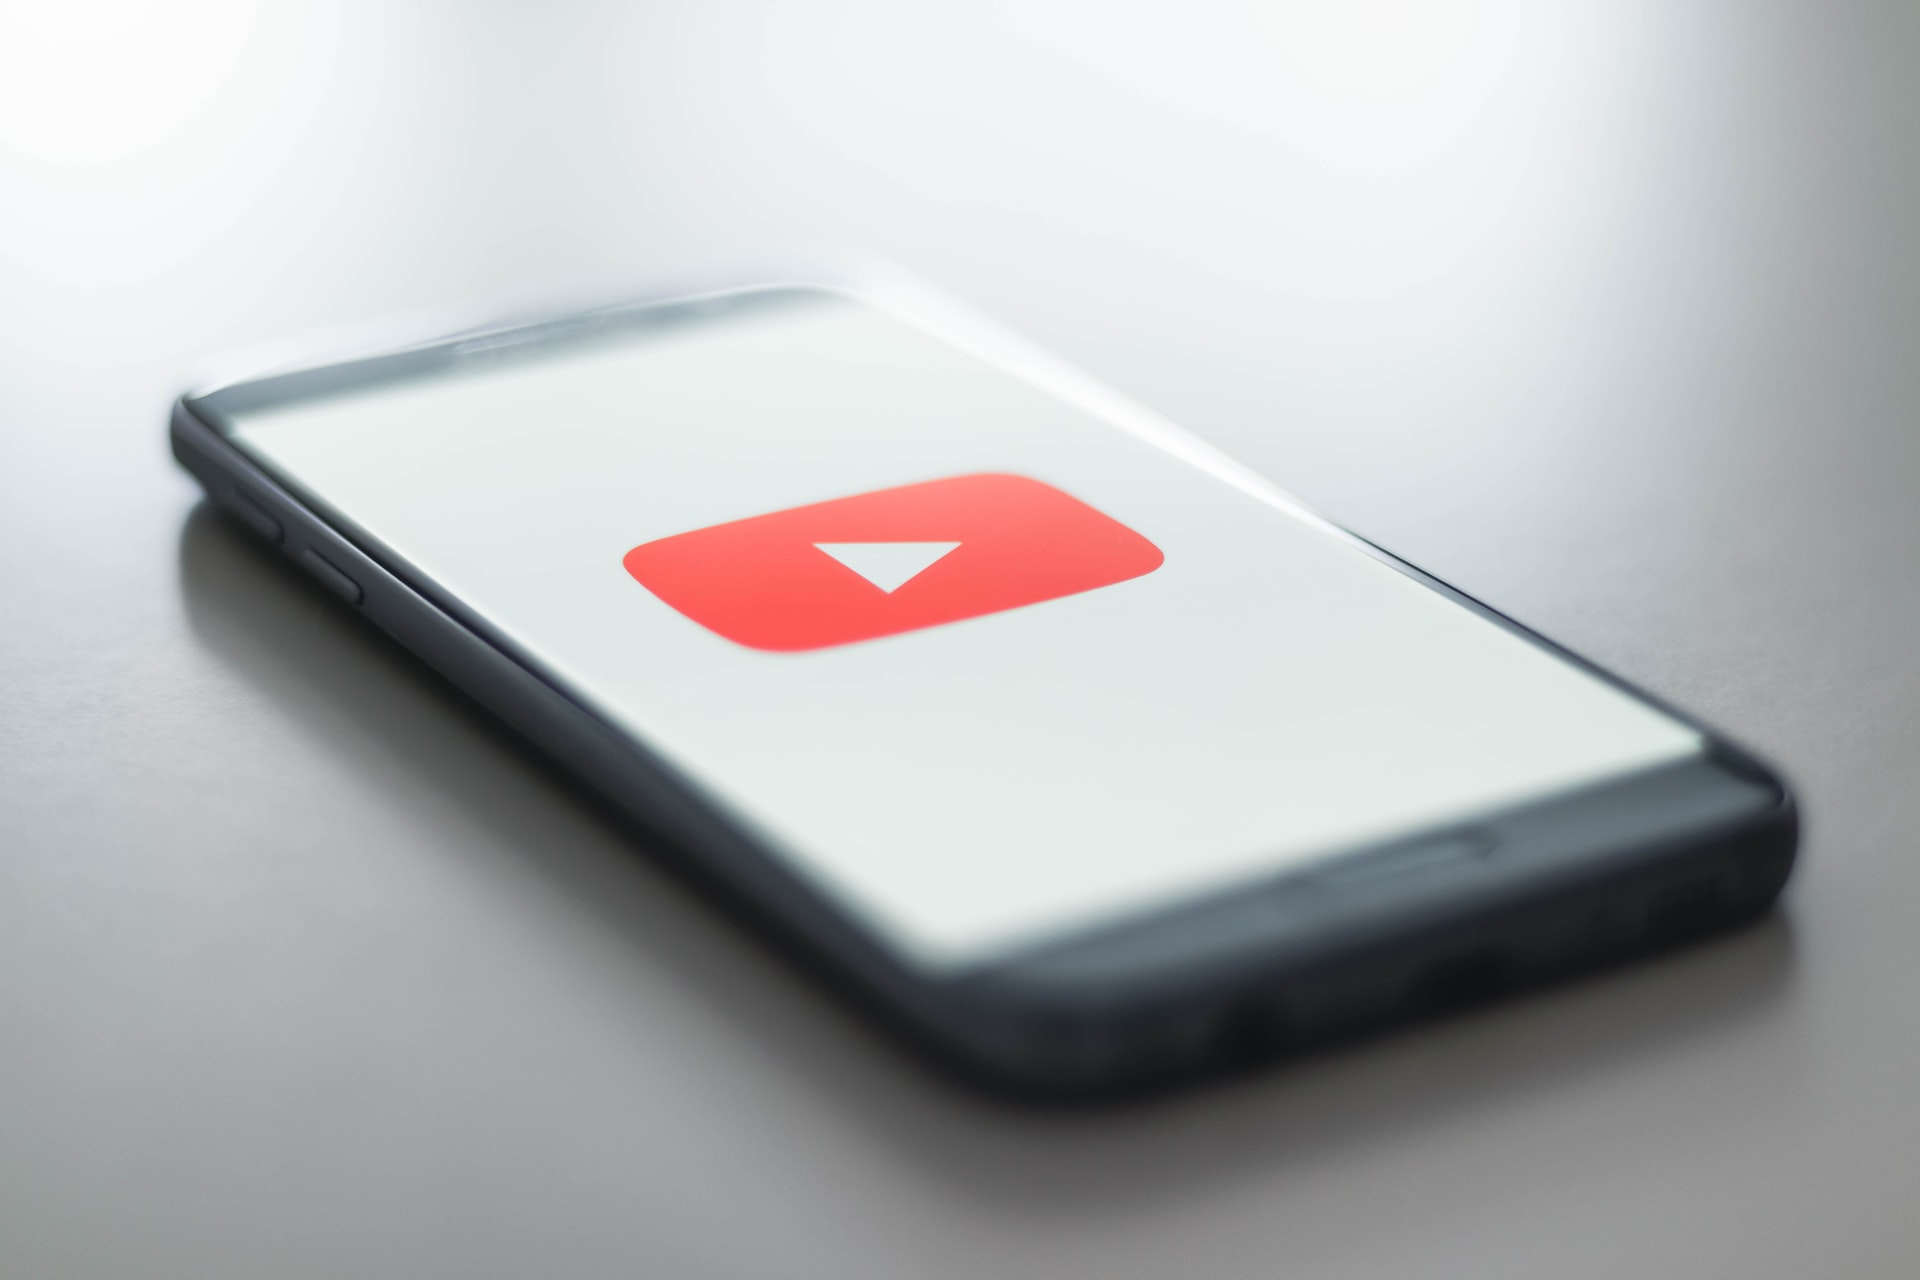 Ekipa Friza podbija YouTube. Miliony wyświetleń nowego teledysku